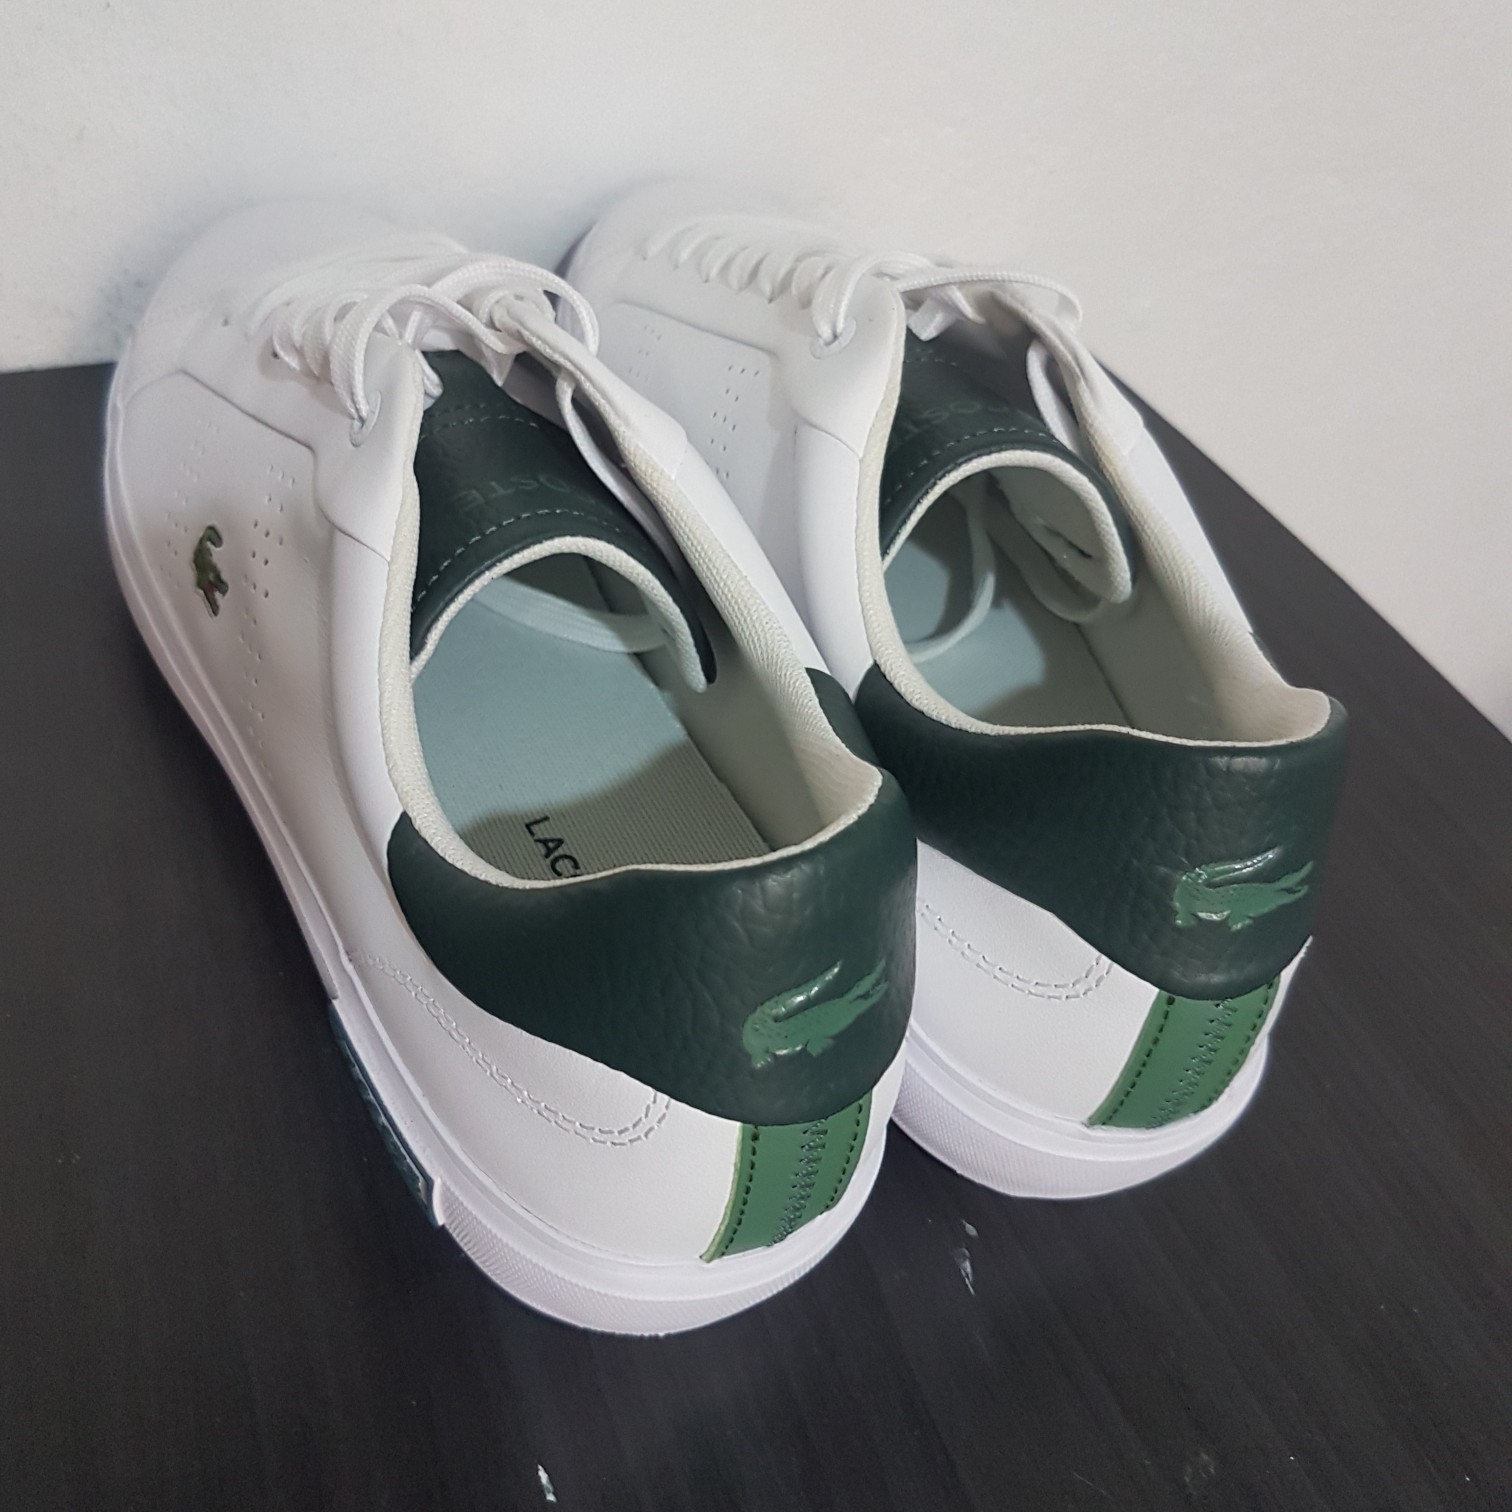 zapatos para hombre - Zapatos, Tenis, Convers, Lacoste, Blanco, verde, hombre. 0